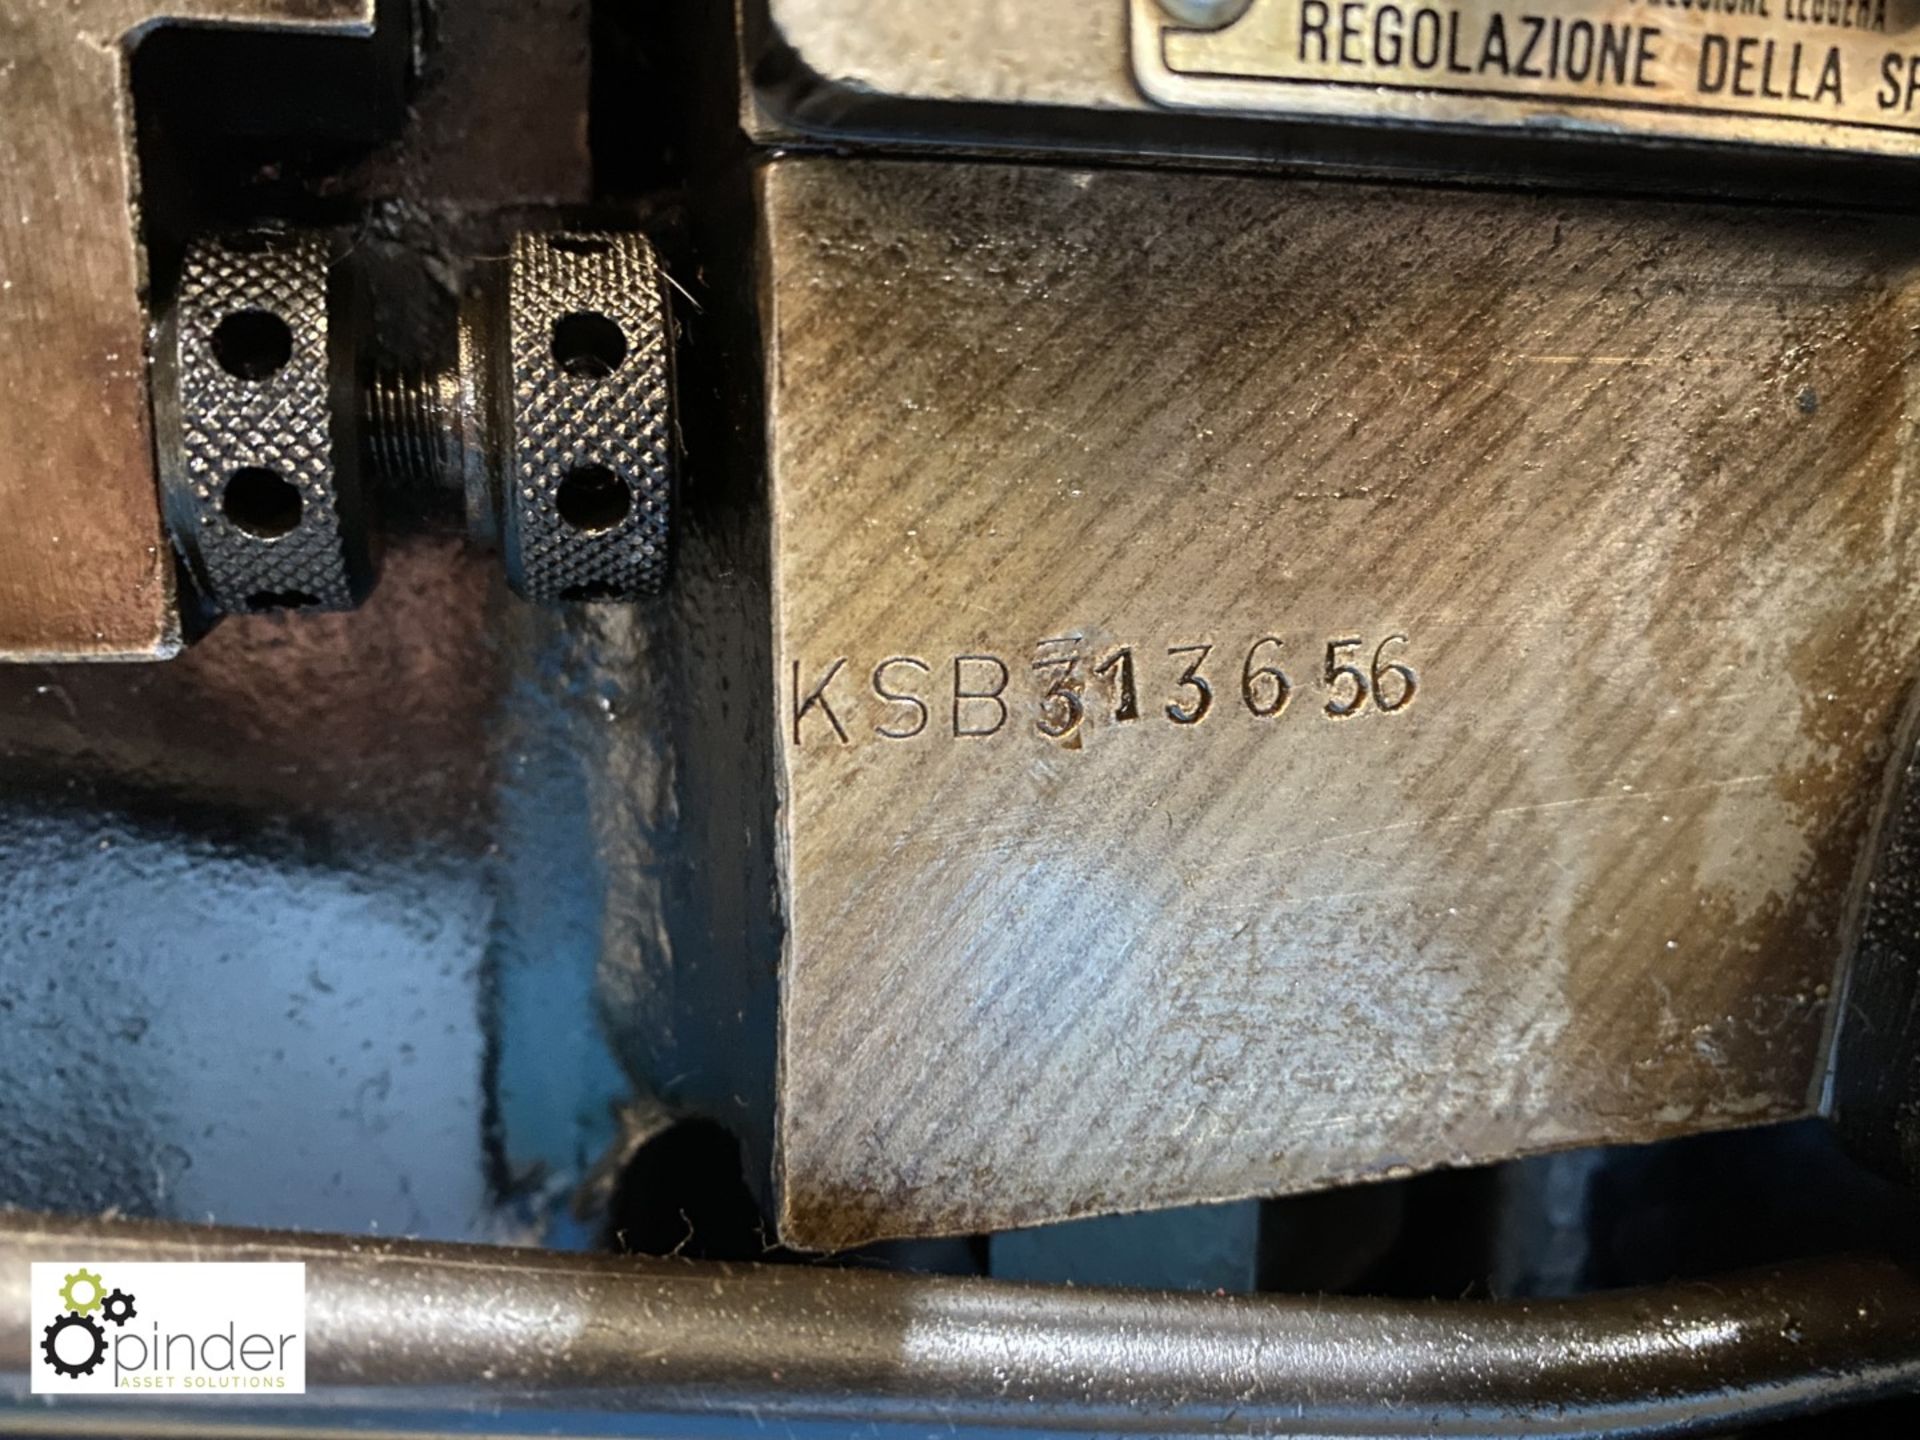 Heidelberg KSB Cylinder Press, 2 sheet detector, 400mm x 570mm, serial number KSB313656, complete - Image 6 of 8